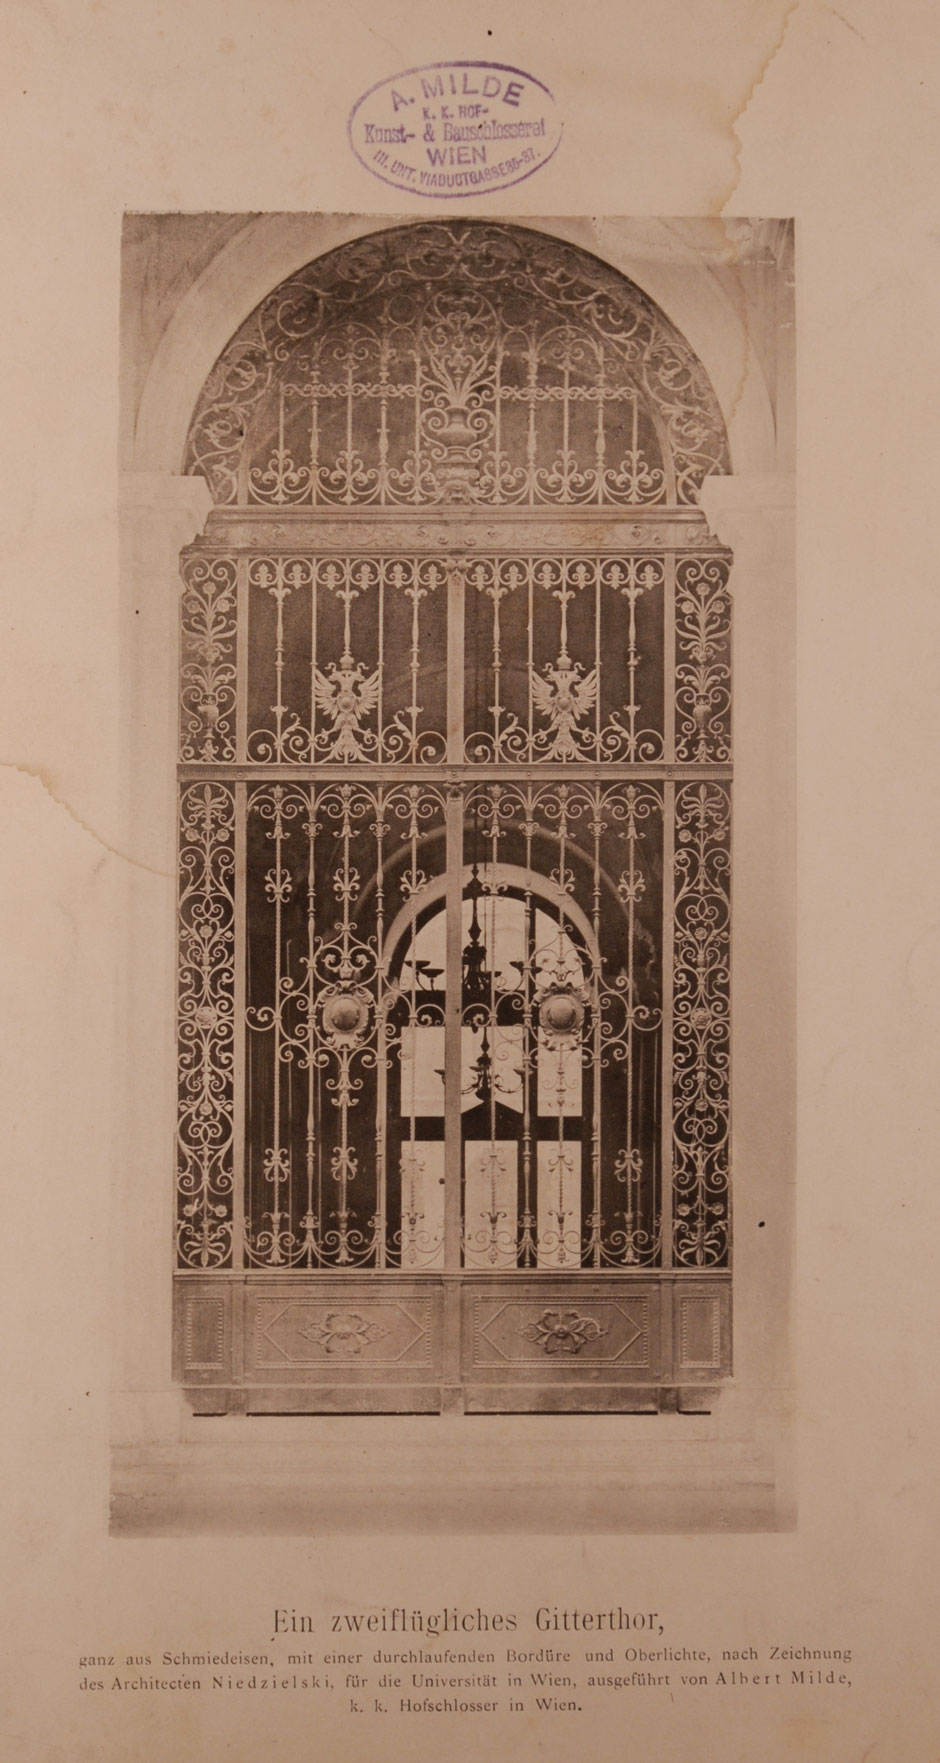 Archivbild: Wiener Universität, Schmiedeeisernes zweiflügeliges Haupt-Gittertor mit einer durchlaufenden Bordüre und Oberlichte